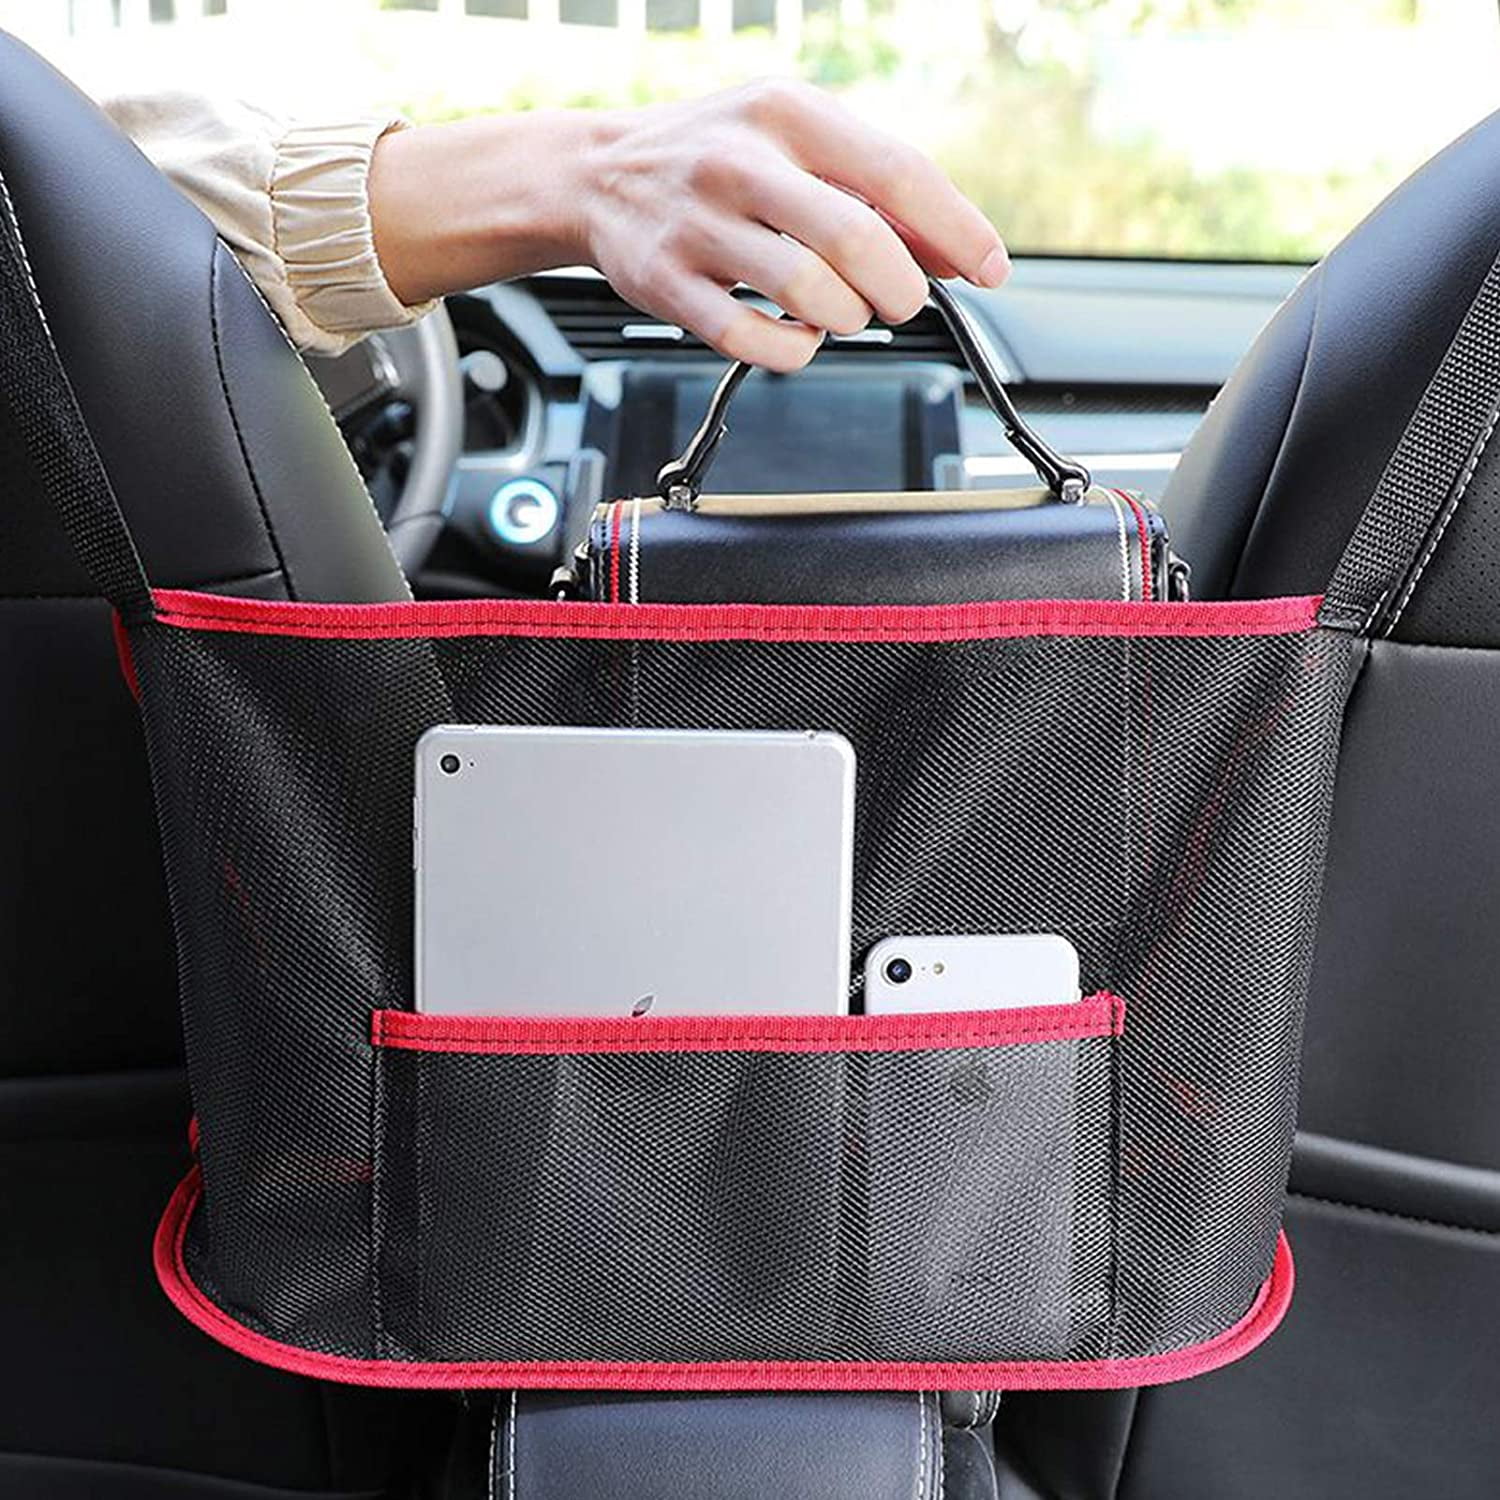 Car Net Pocket Handbag Holder Seat Back Organizer Mesh Large Capacity Bag for Purse Storage Phone Documents Pocket,Barrier of Backseat Pet Kids,Cargo Tissue Holder Standard, Black 